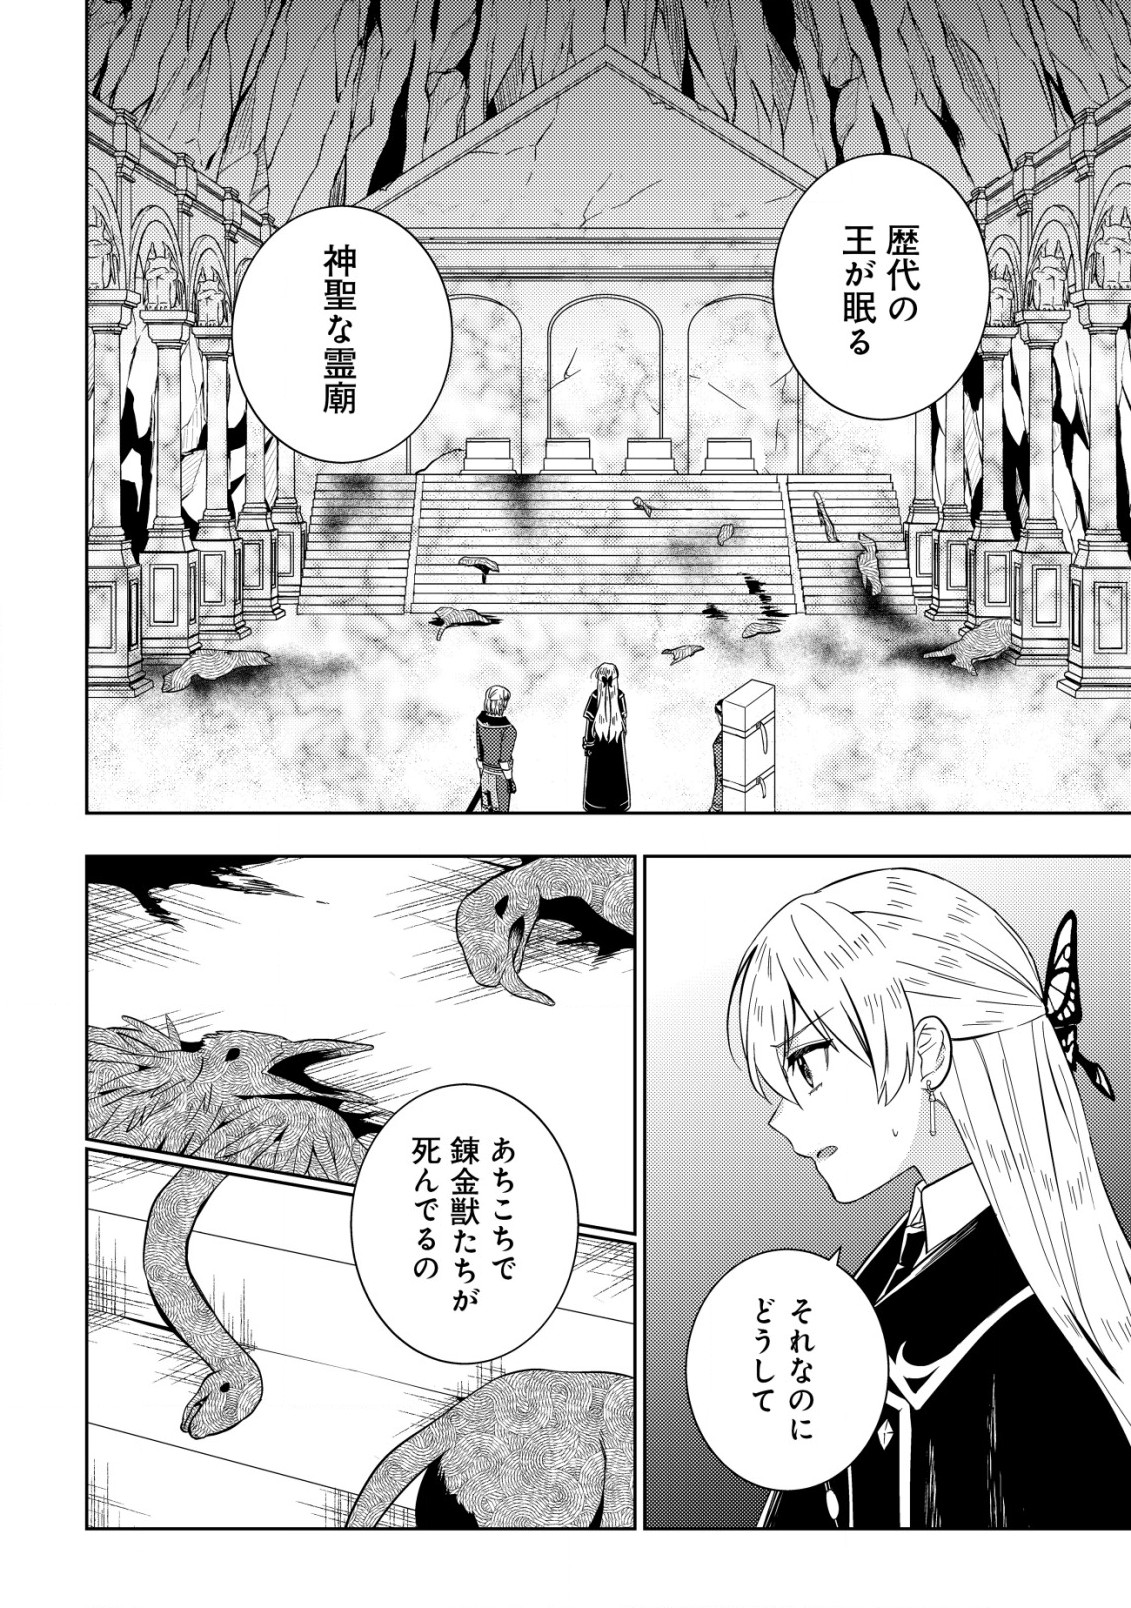 Horobi no Oukoku no Renkinjutsu Reijou - Chapter 11 - Page 2